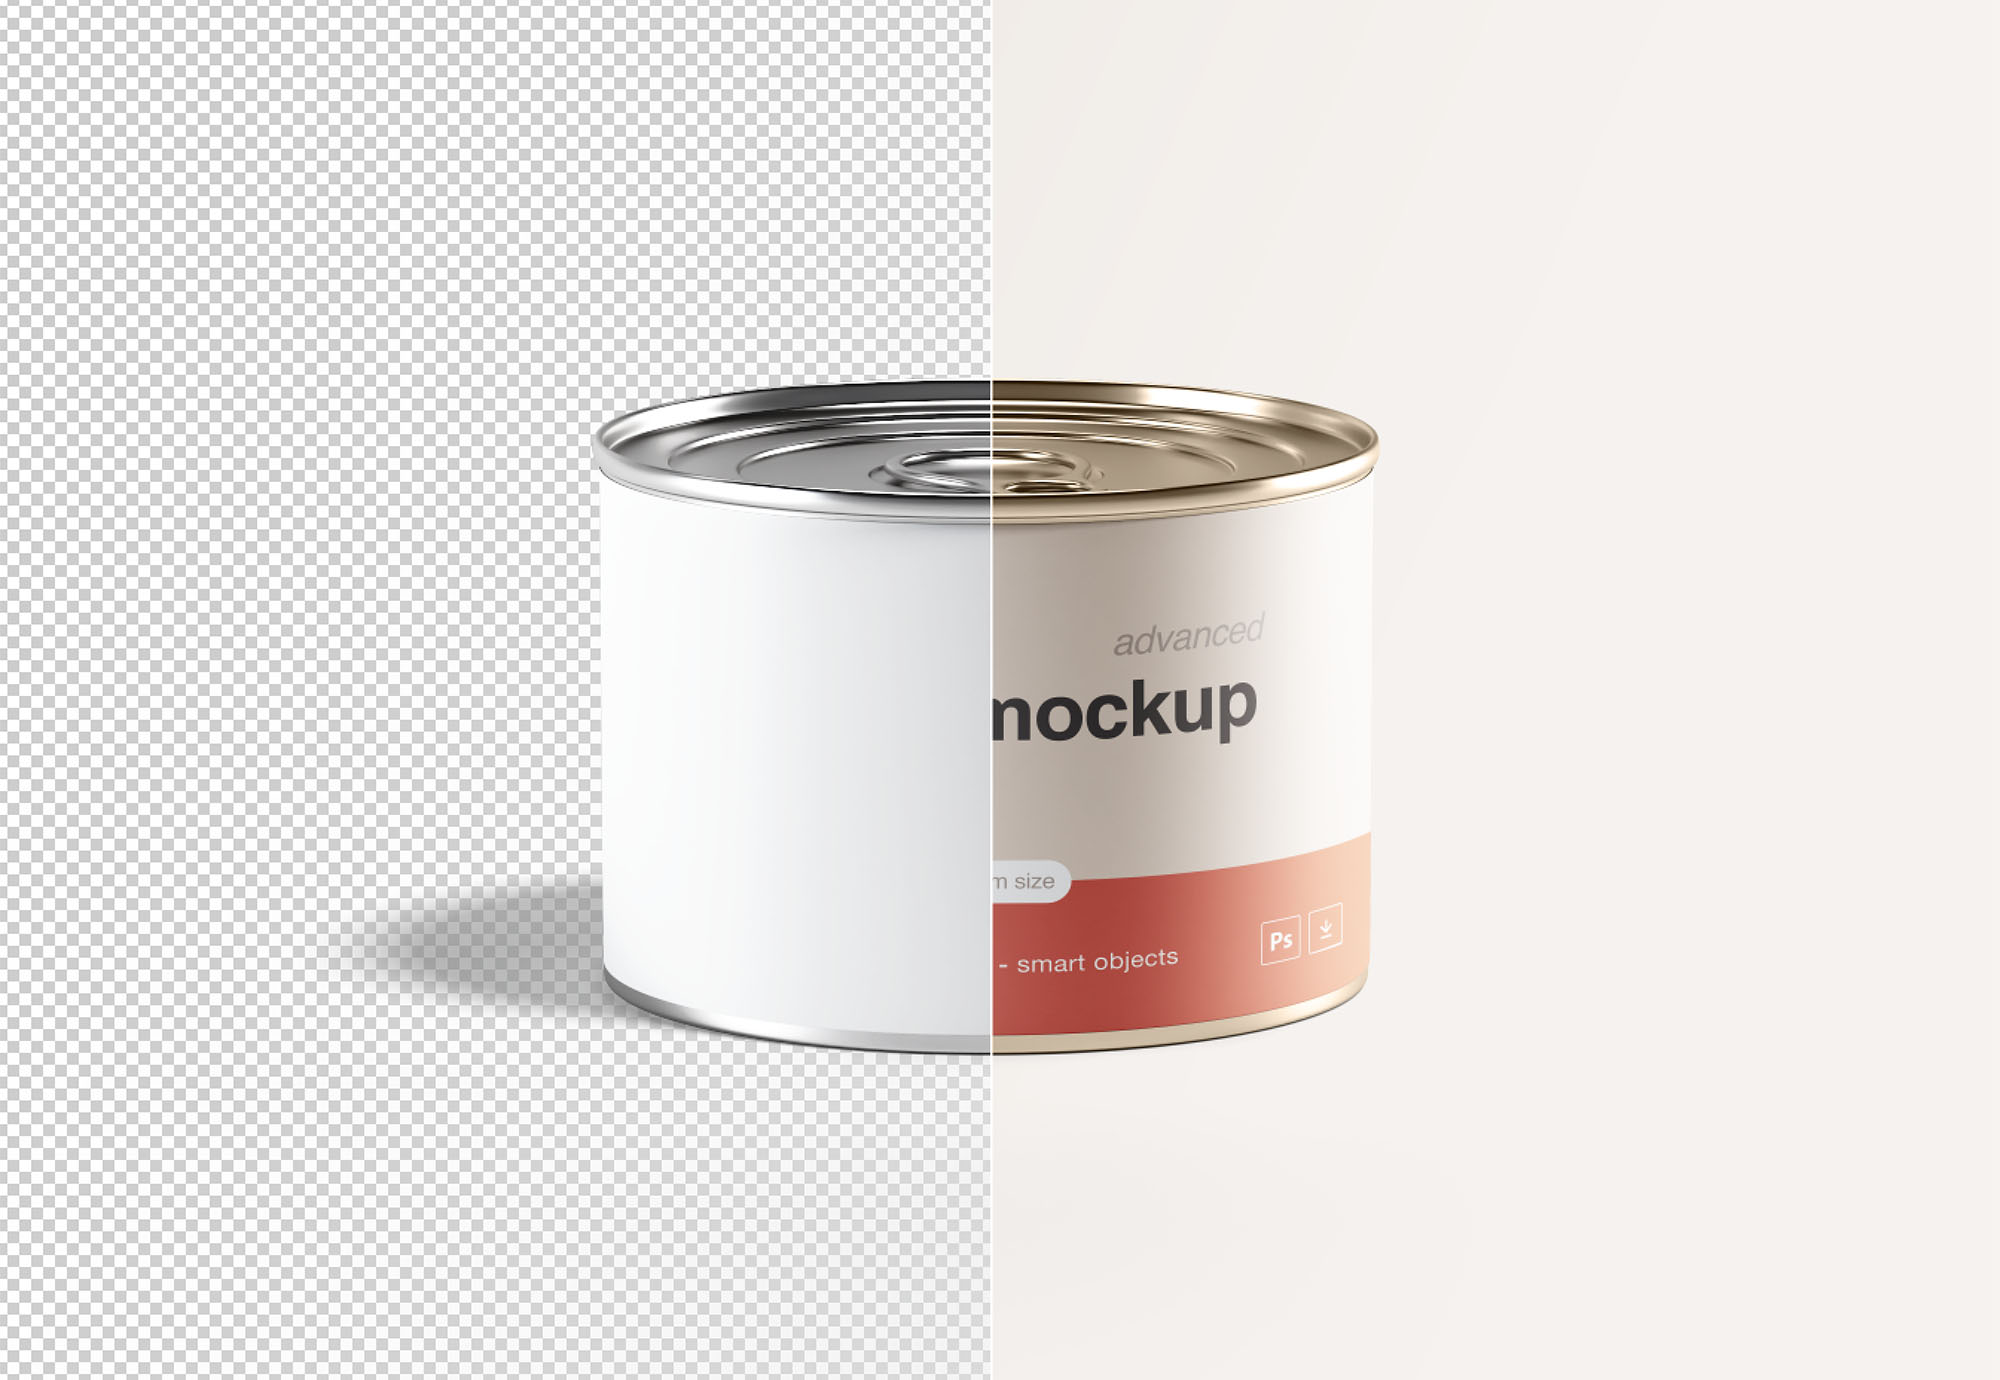 中型锡罐食品罐头外观设计样机模板 Medium Tin Can Mockup插图(2)